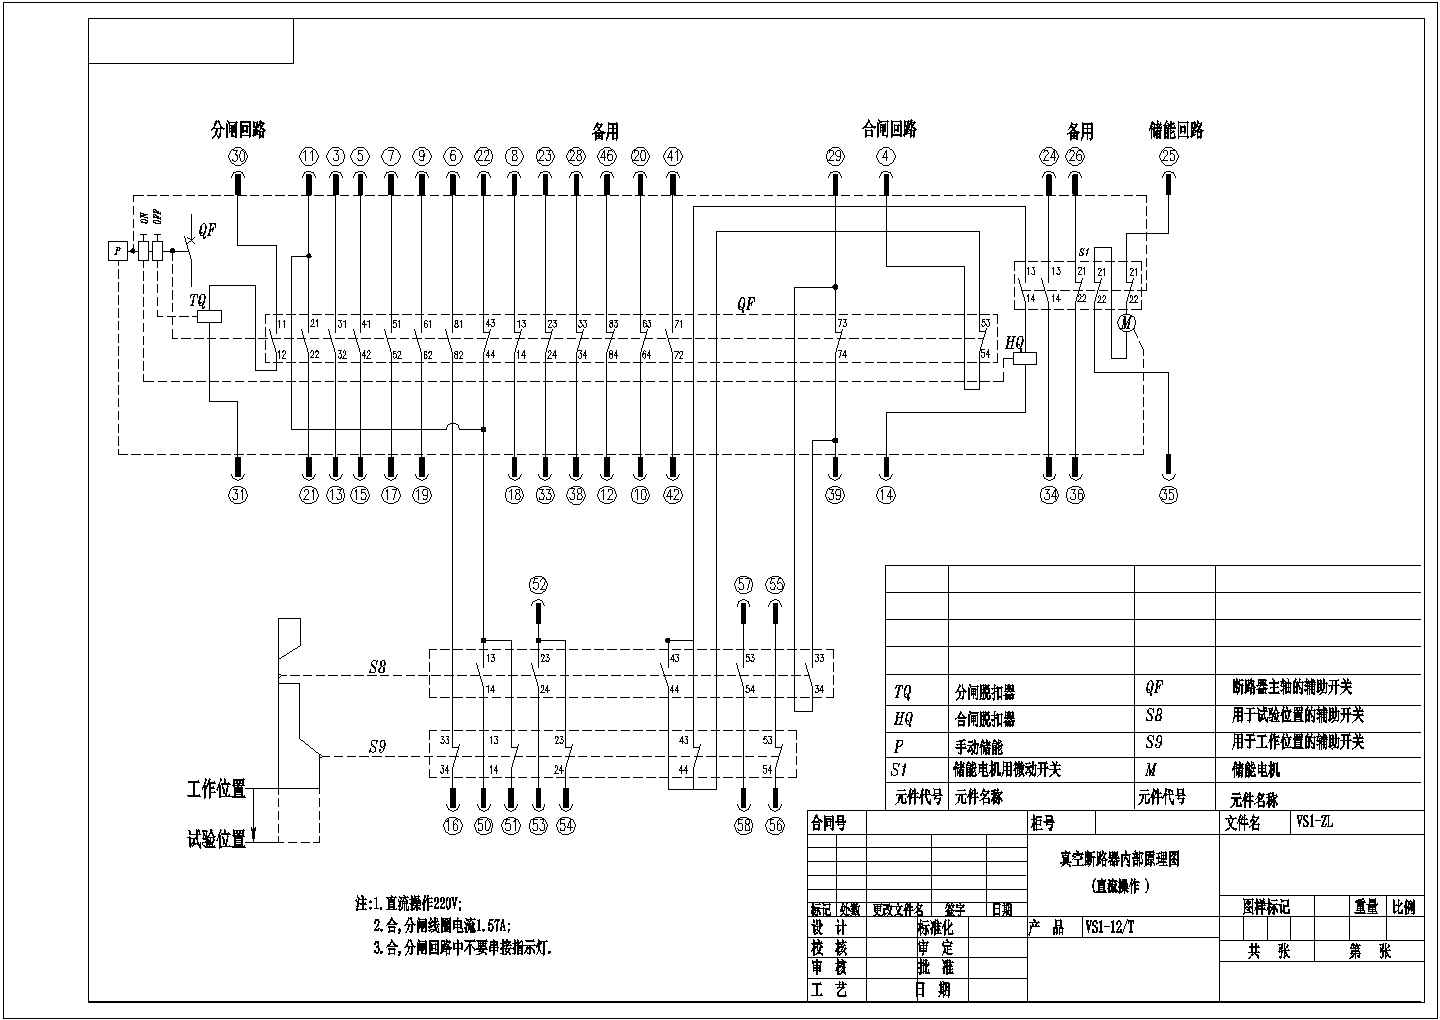 【衡阳市】某厂研发VS1进线柜原理图